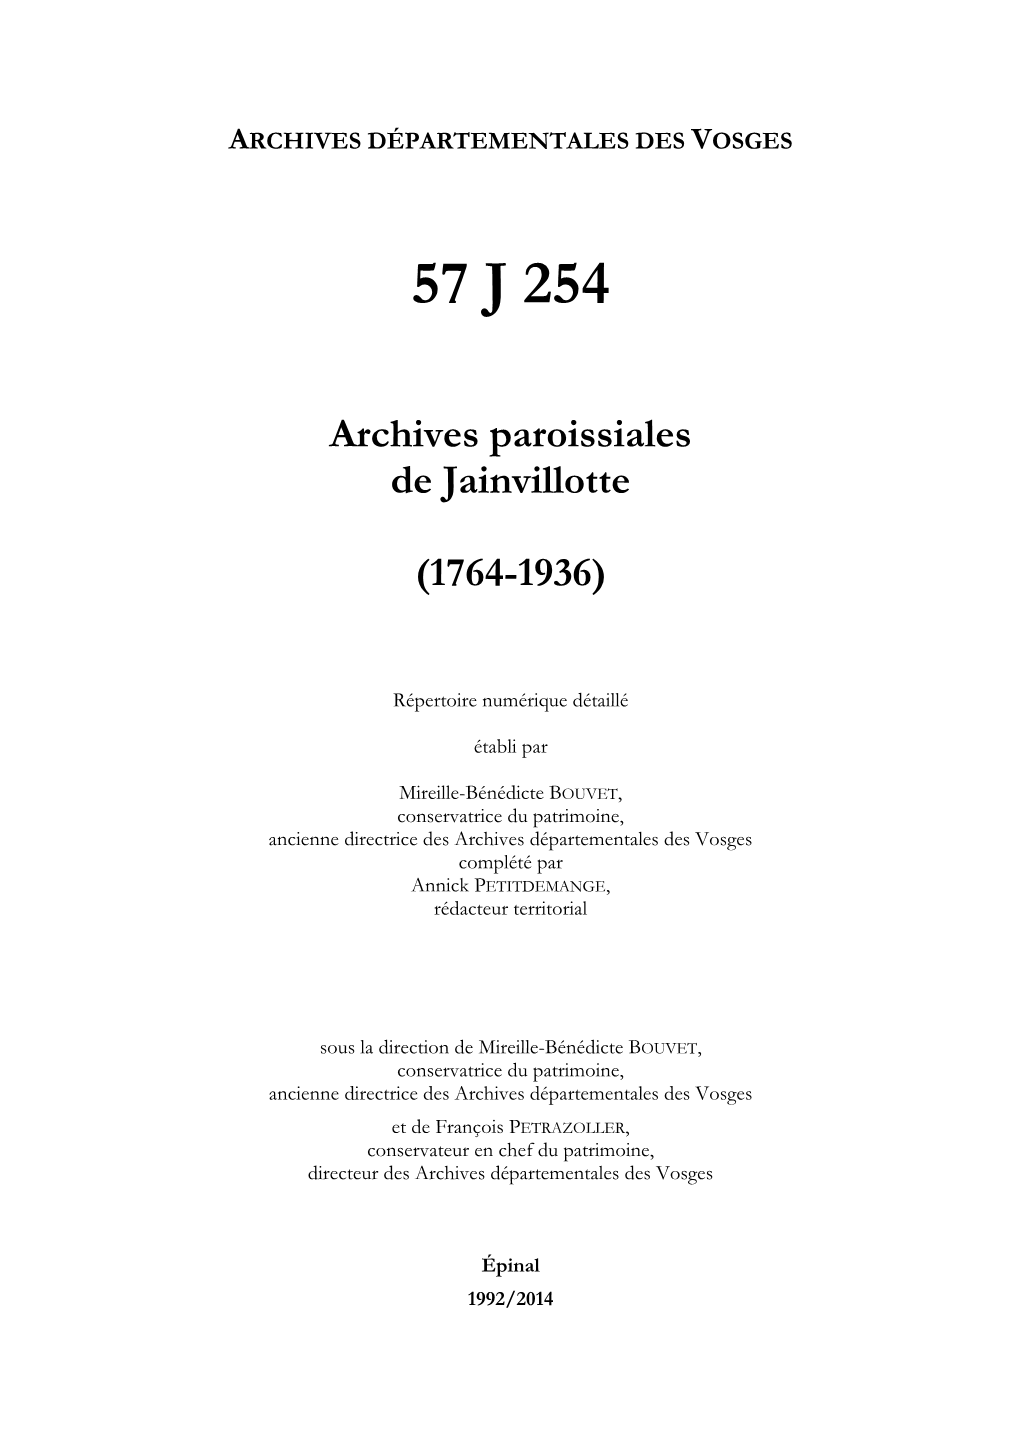 Archives De La Paroisse De Jainvillotte.Pdf